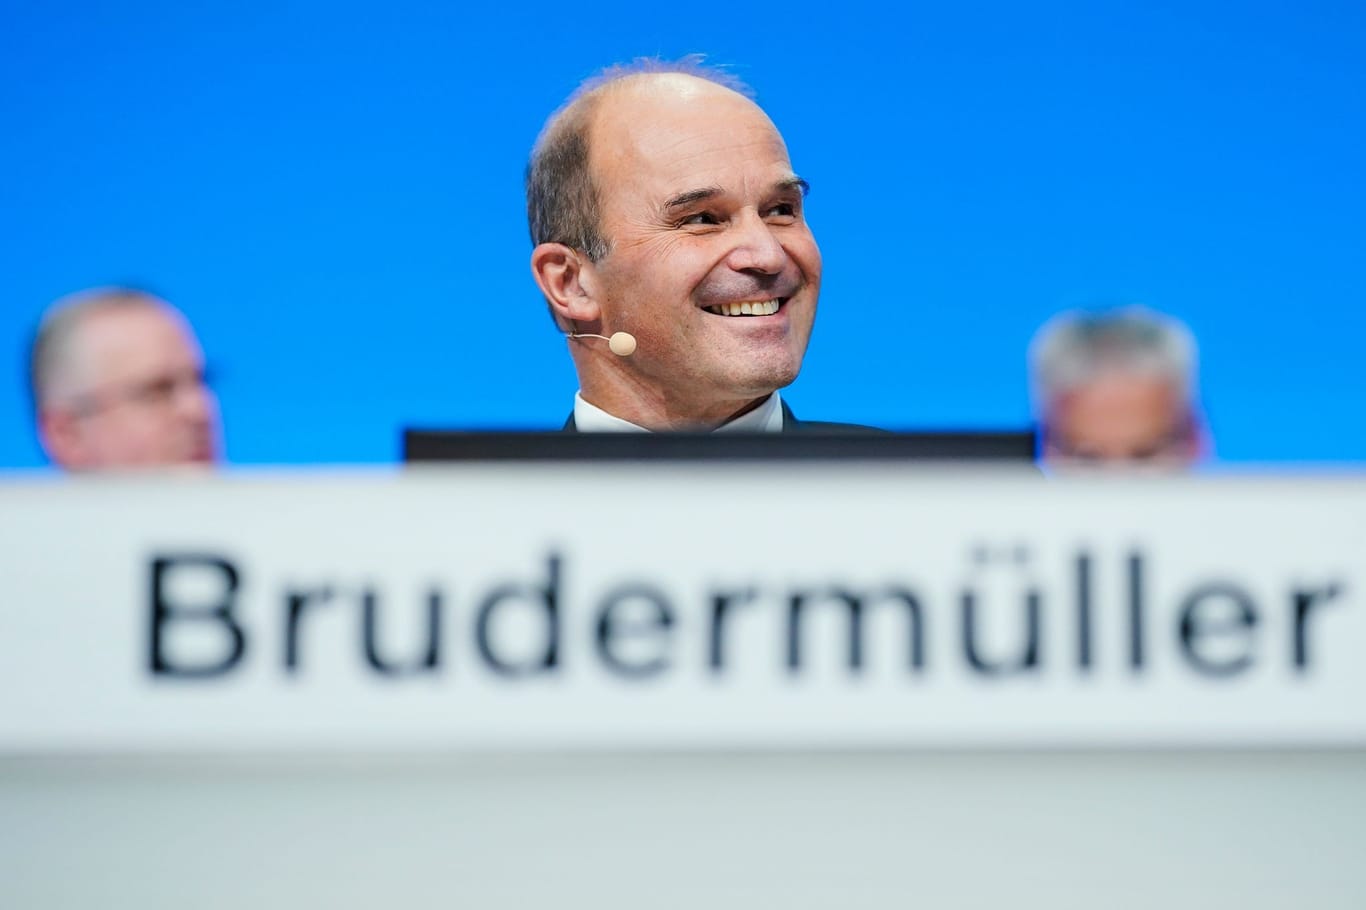 Martin Brudermüller